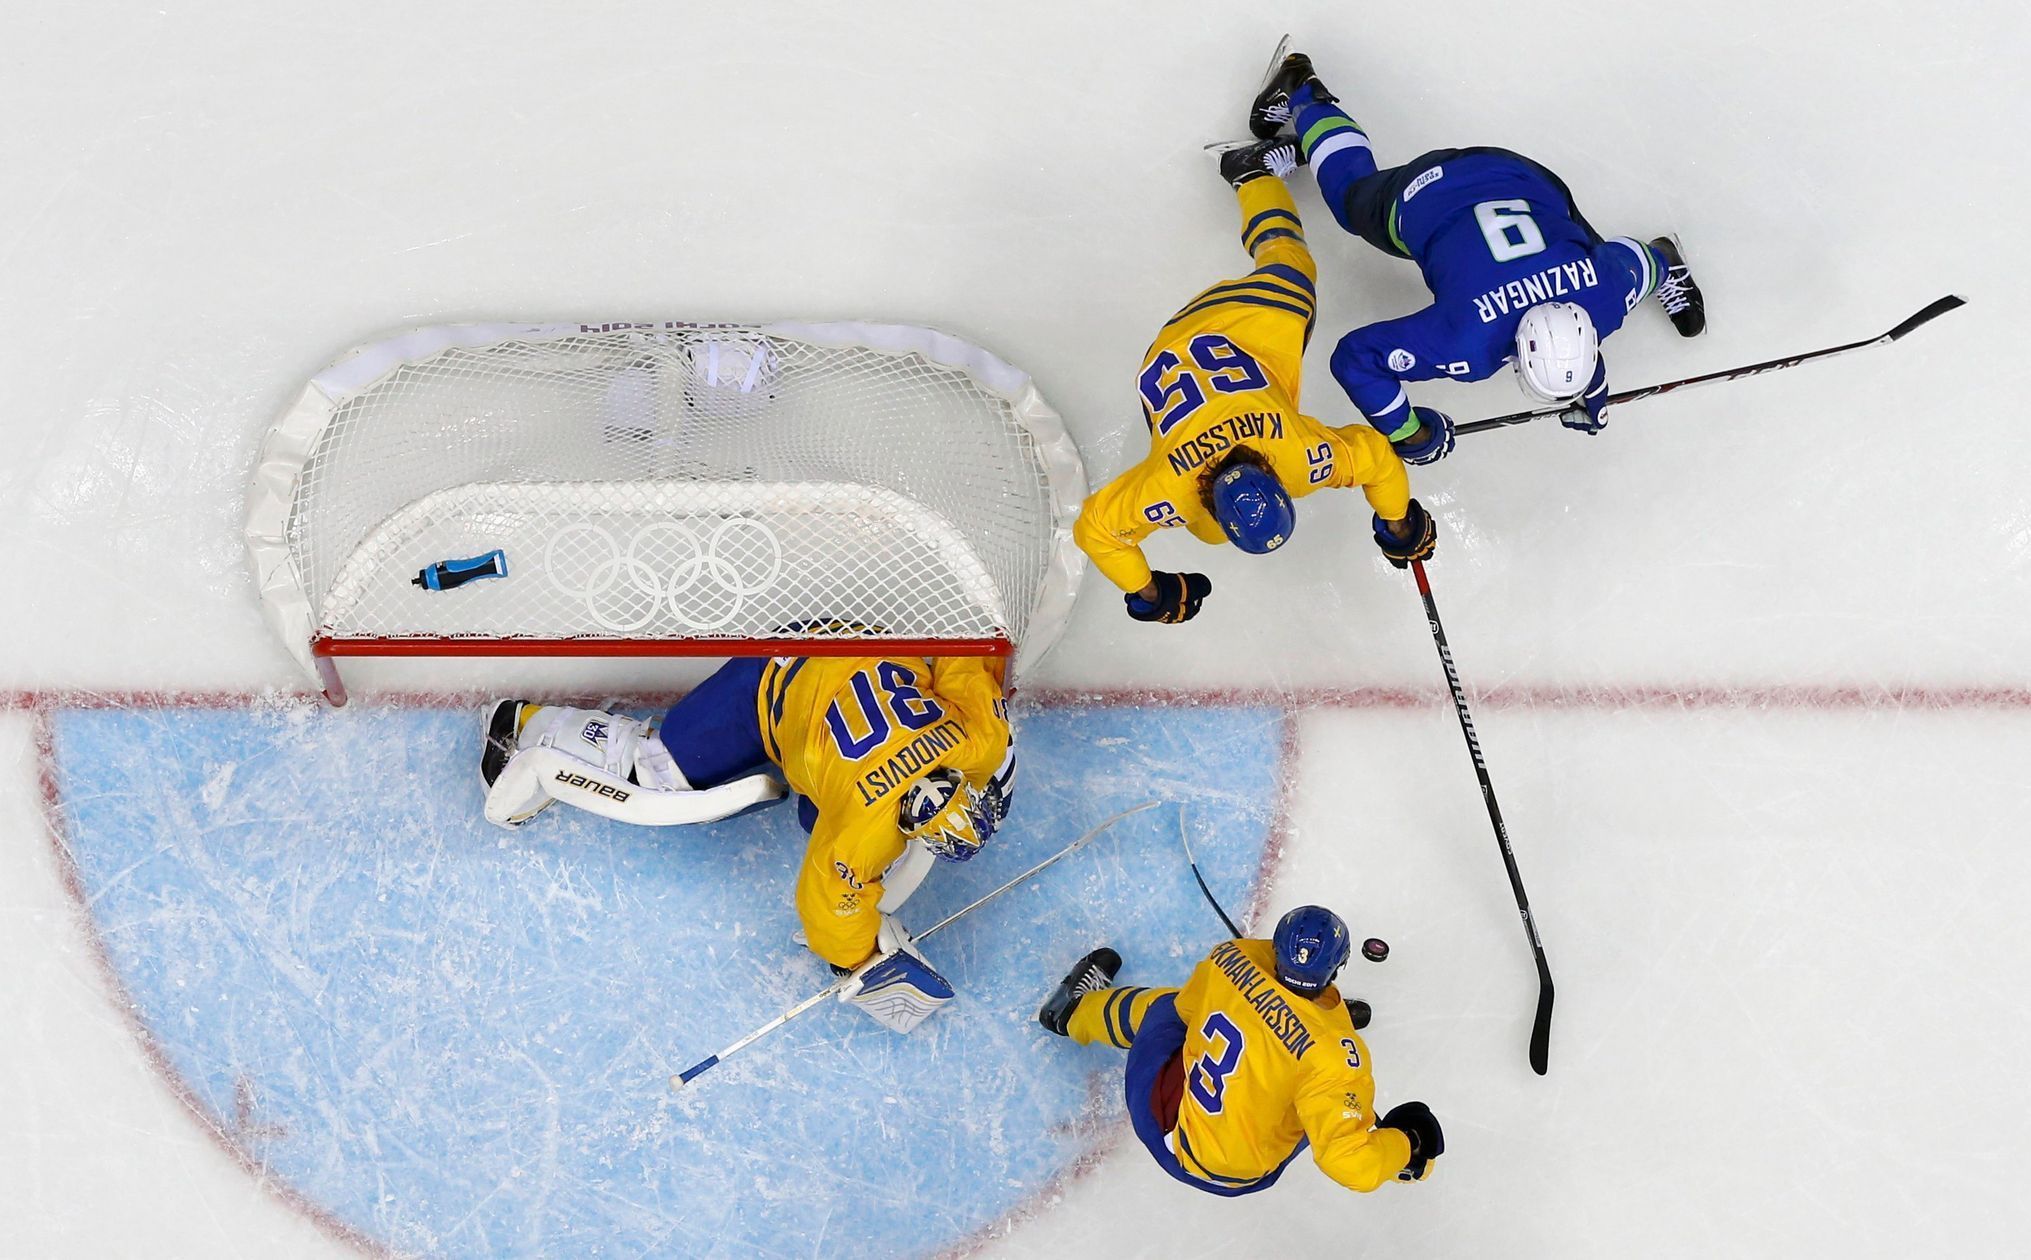 Soči 2014: Švédsko - Slovinsko, Razingar, Karlsson, Larrson (hokej, muži, čtvrtfinále 1)